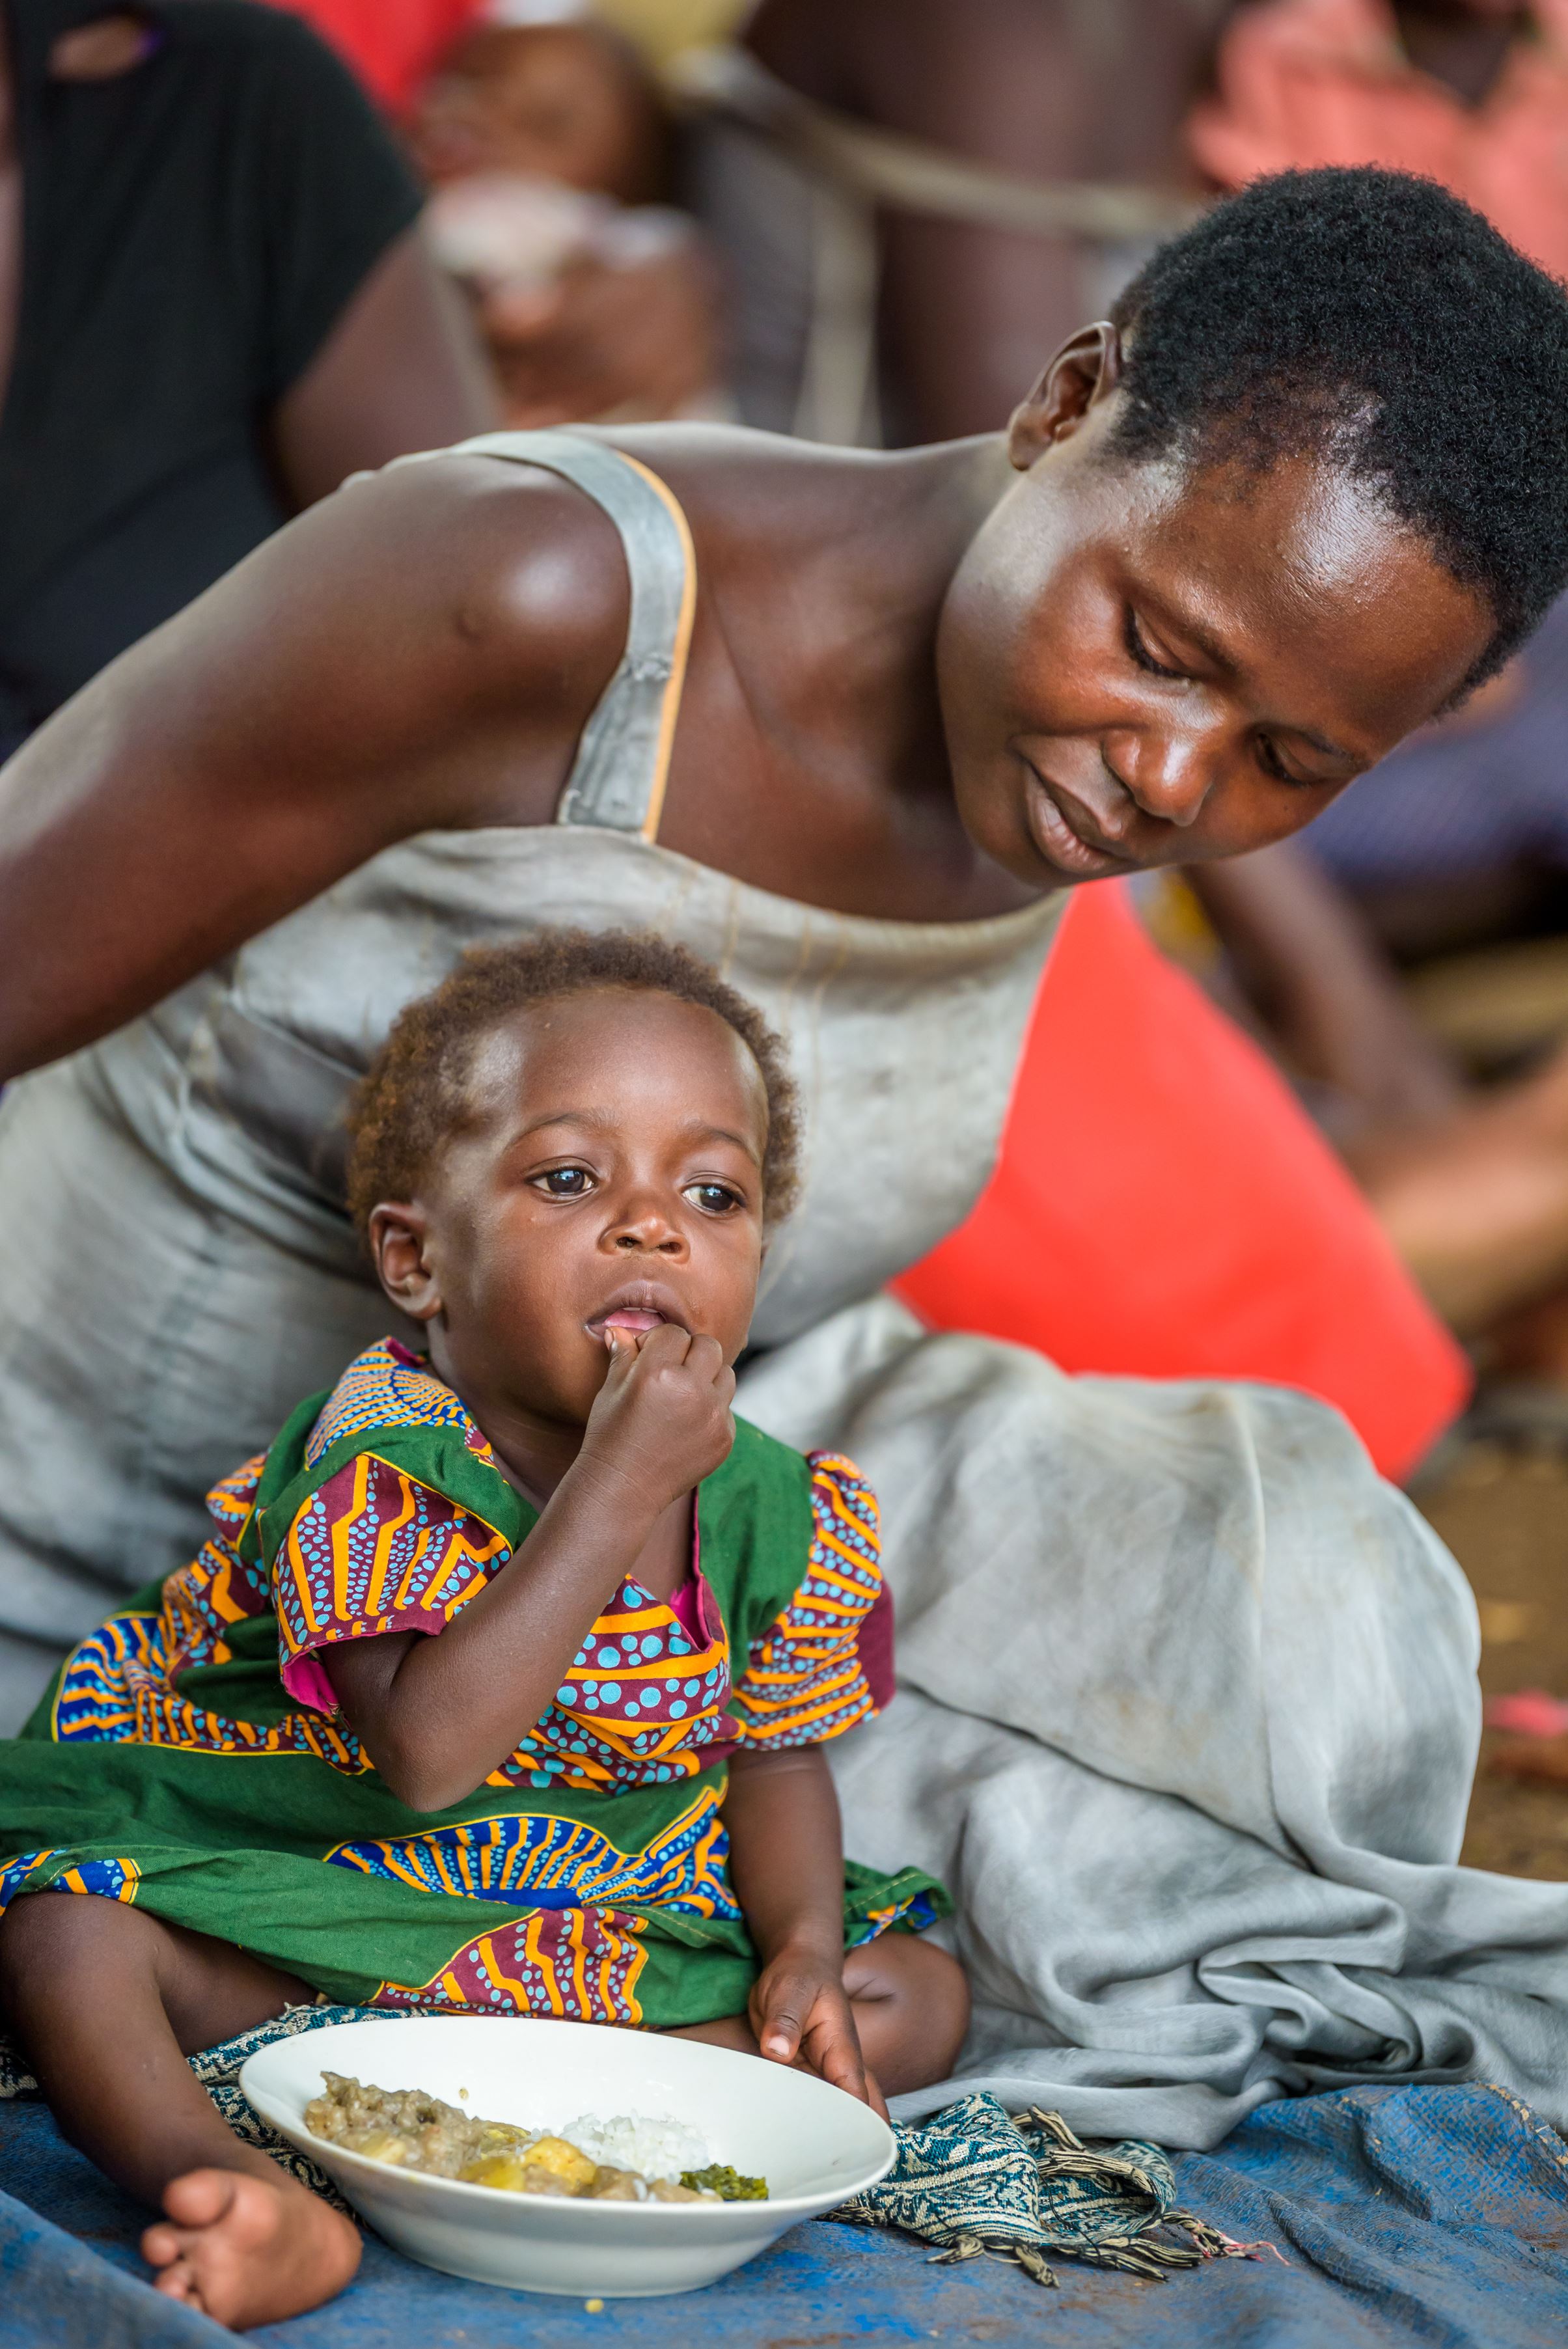 Madre y niño de uganda disfrutando su comida